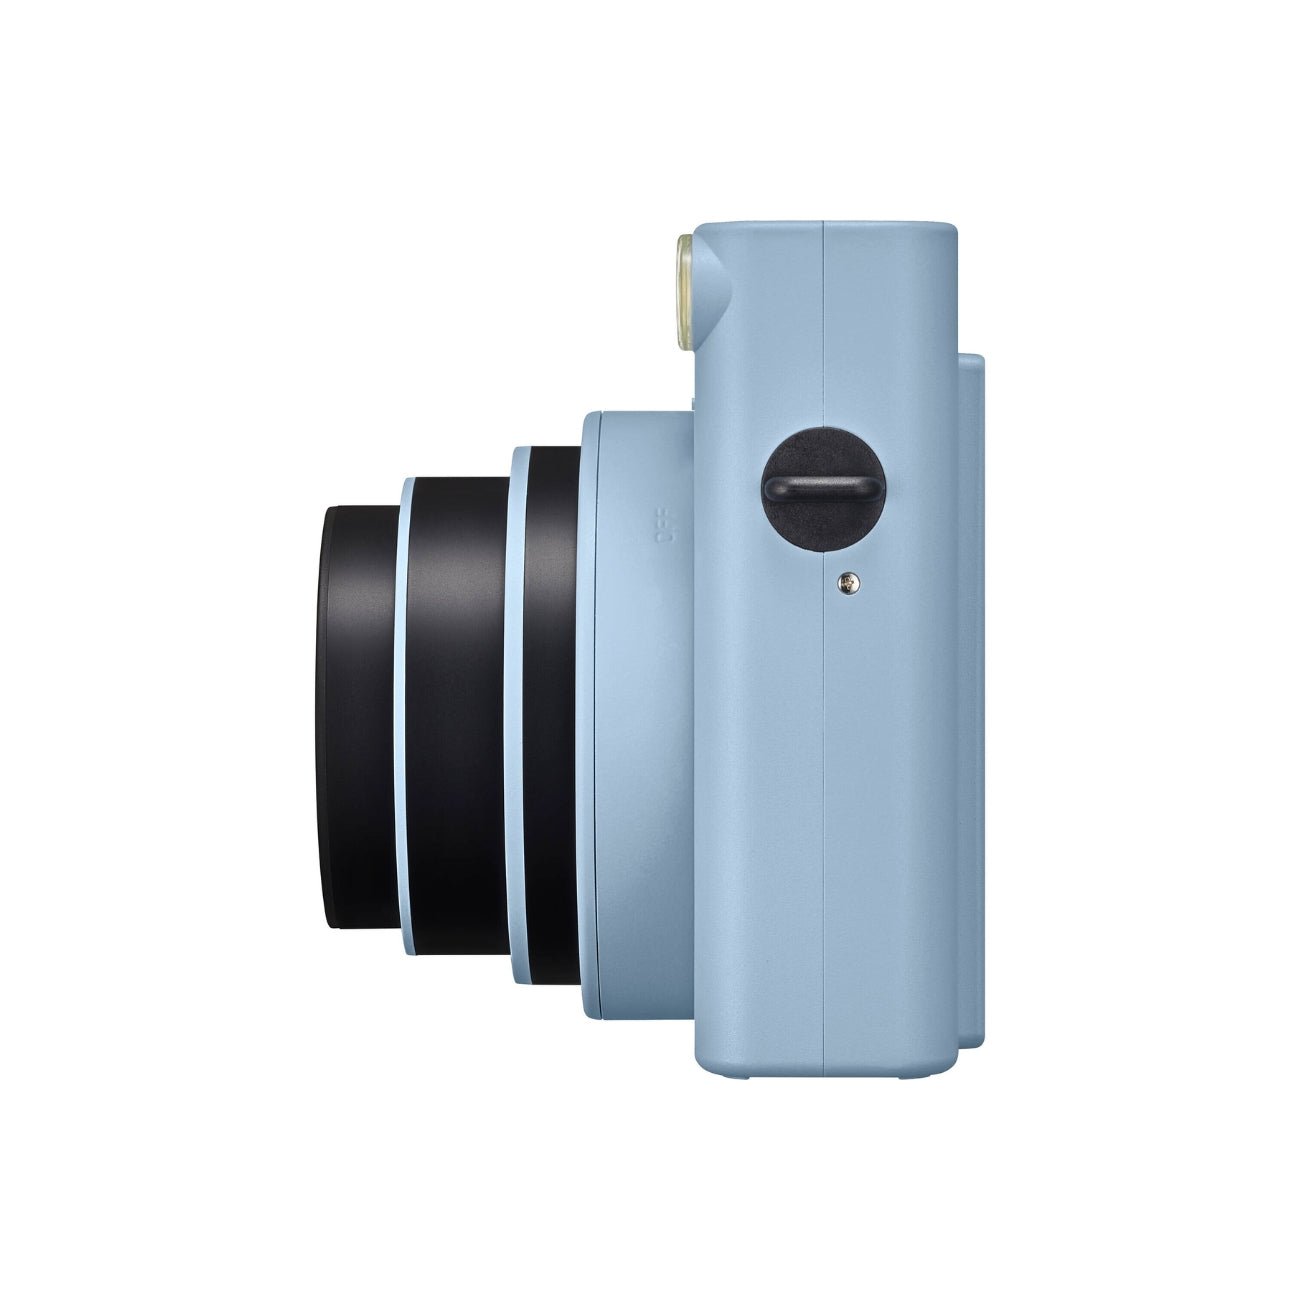 Fujifilm Instax SQUARE SQ1 Instant Film Camera Glacier Blue Side View